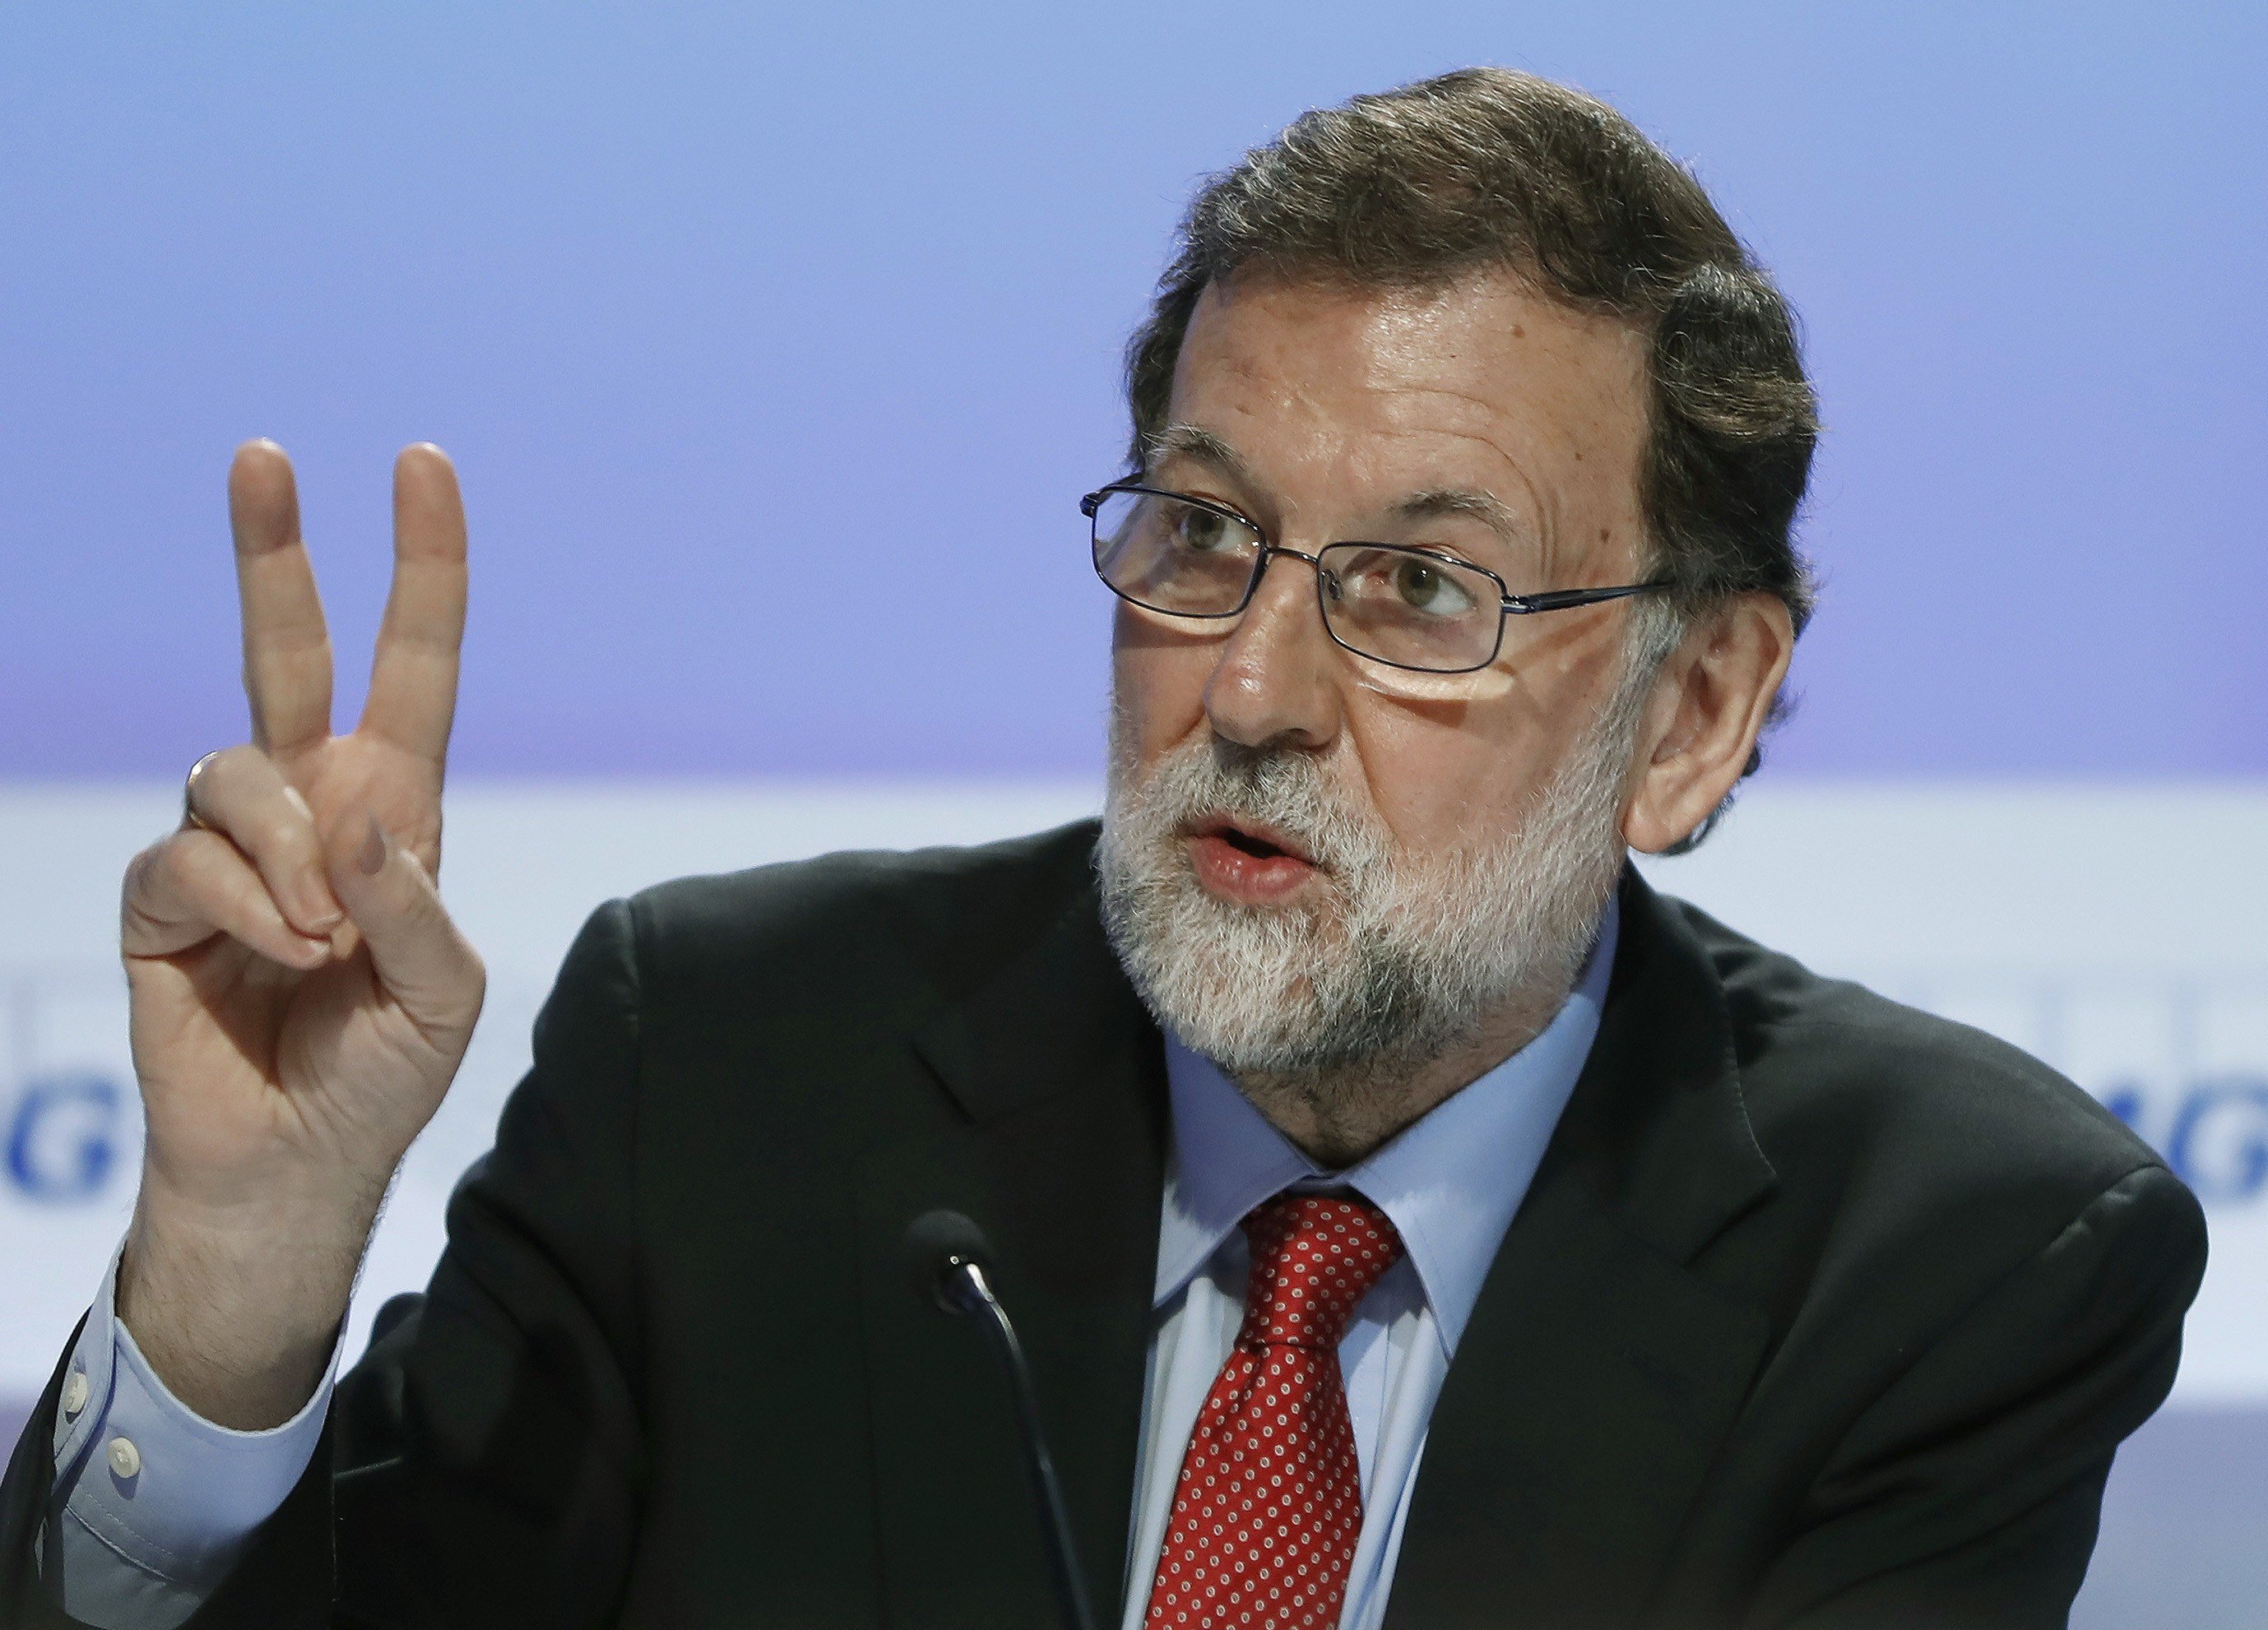 Repulsa generalizada en España a cómo Rajoy gestiona la crisis con Catalunya